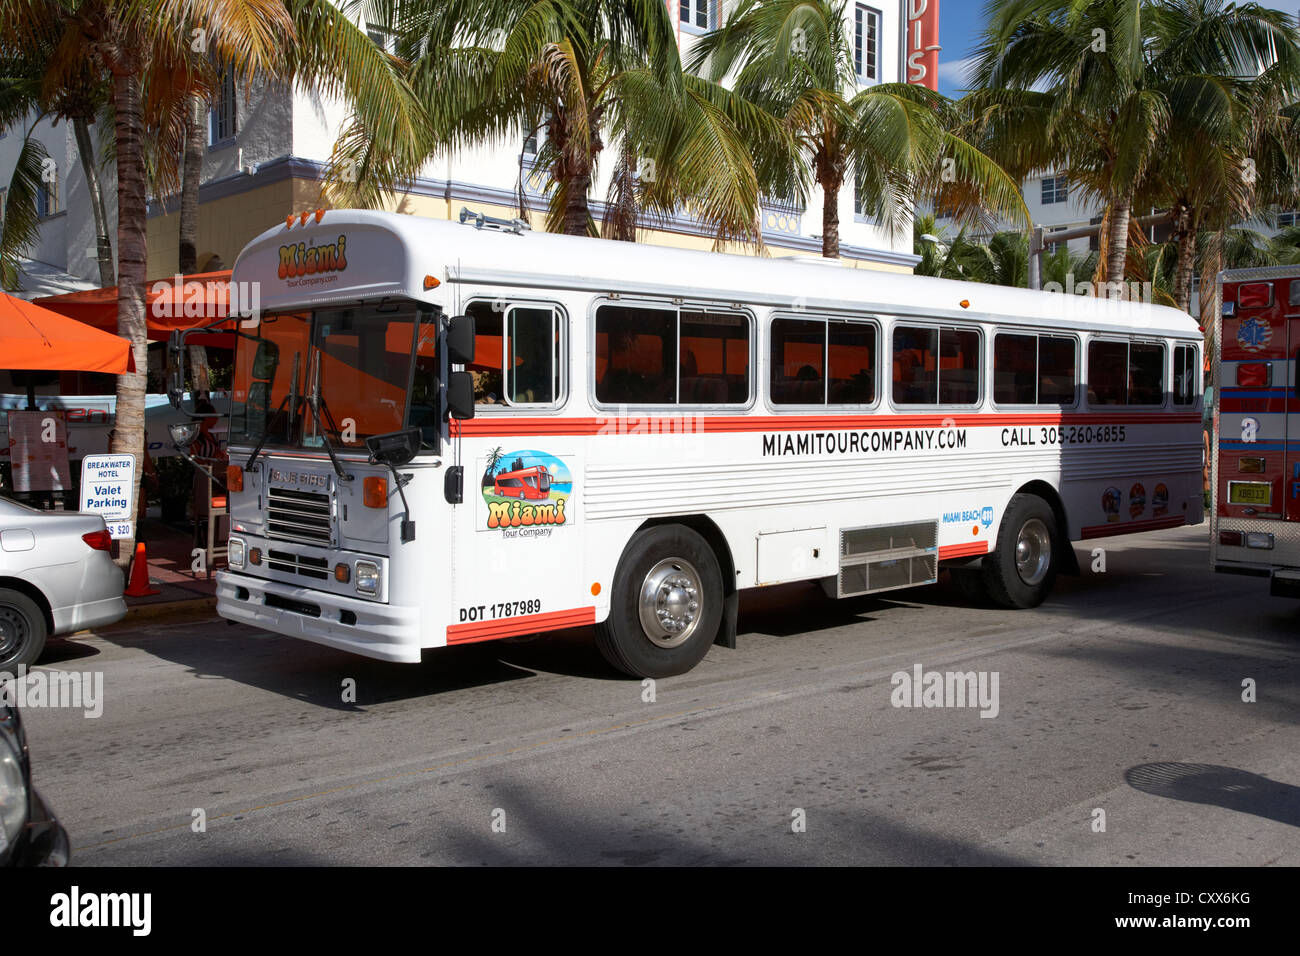 Miami tour company tourist bus tours South beach floride usa Banque D'Images